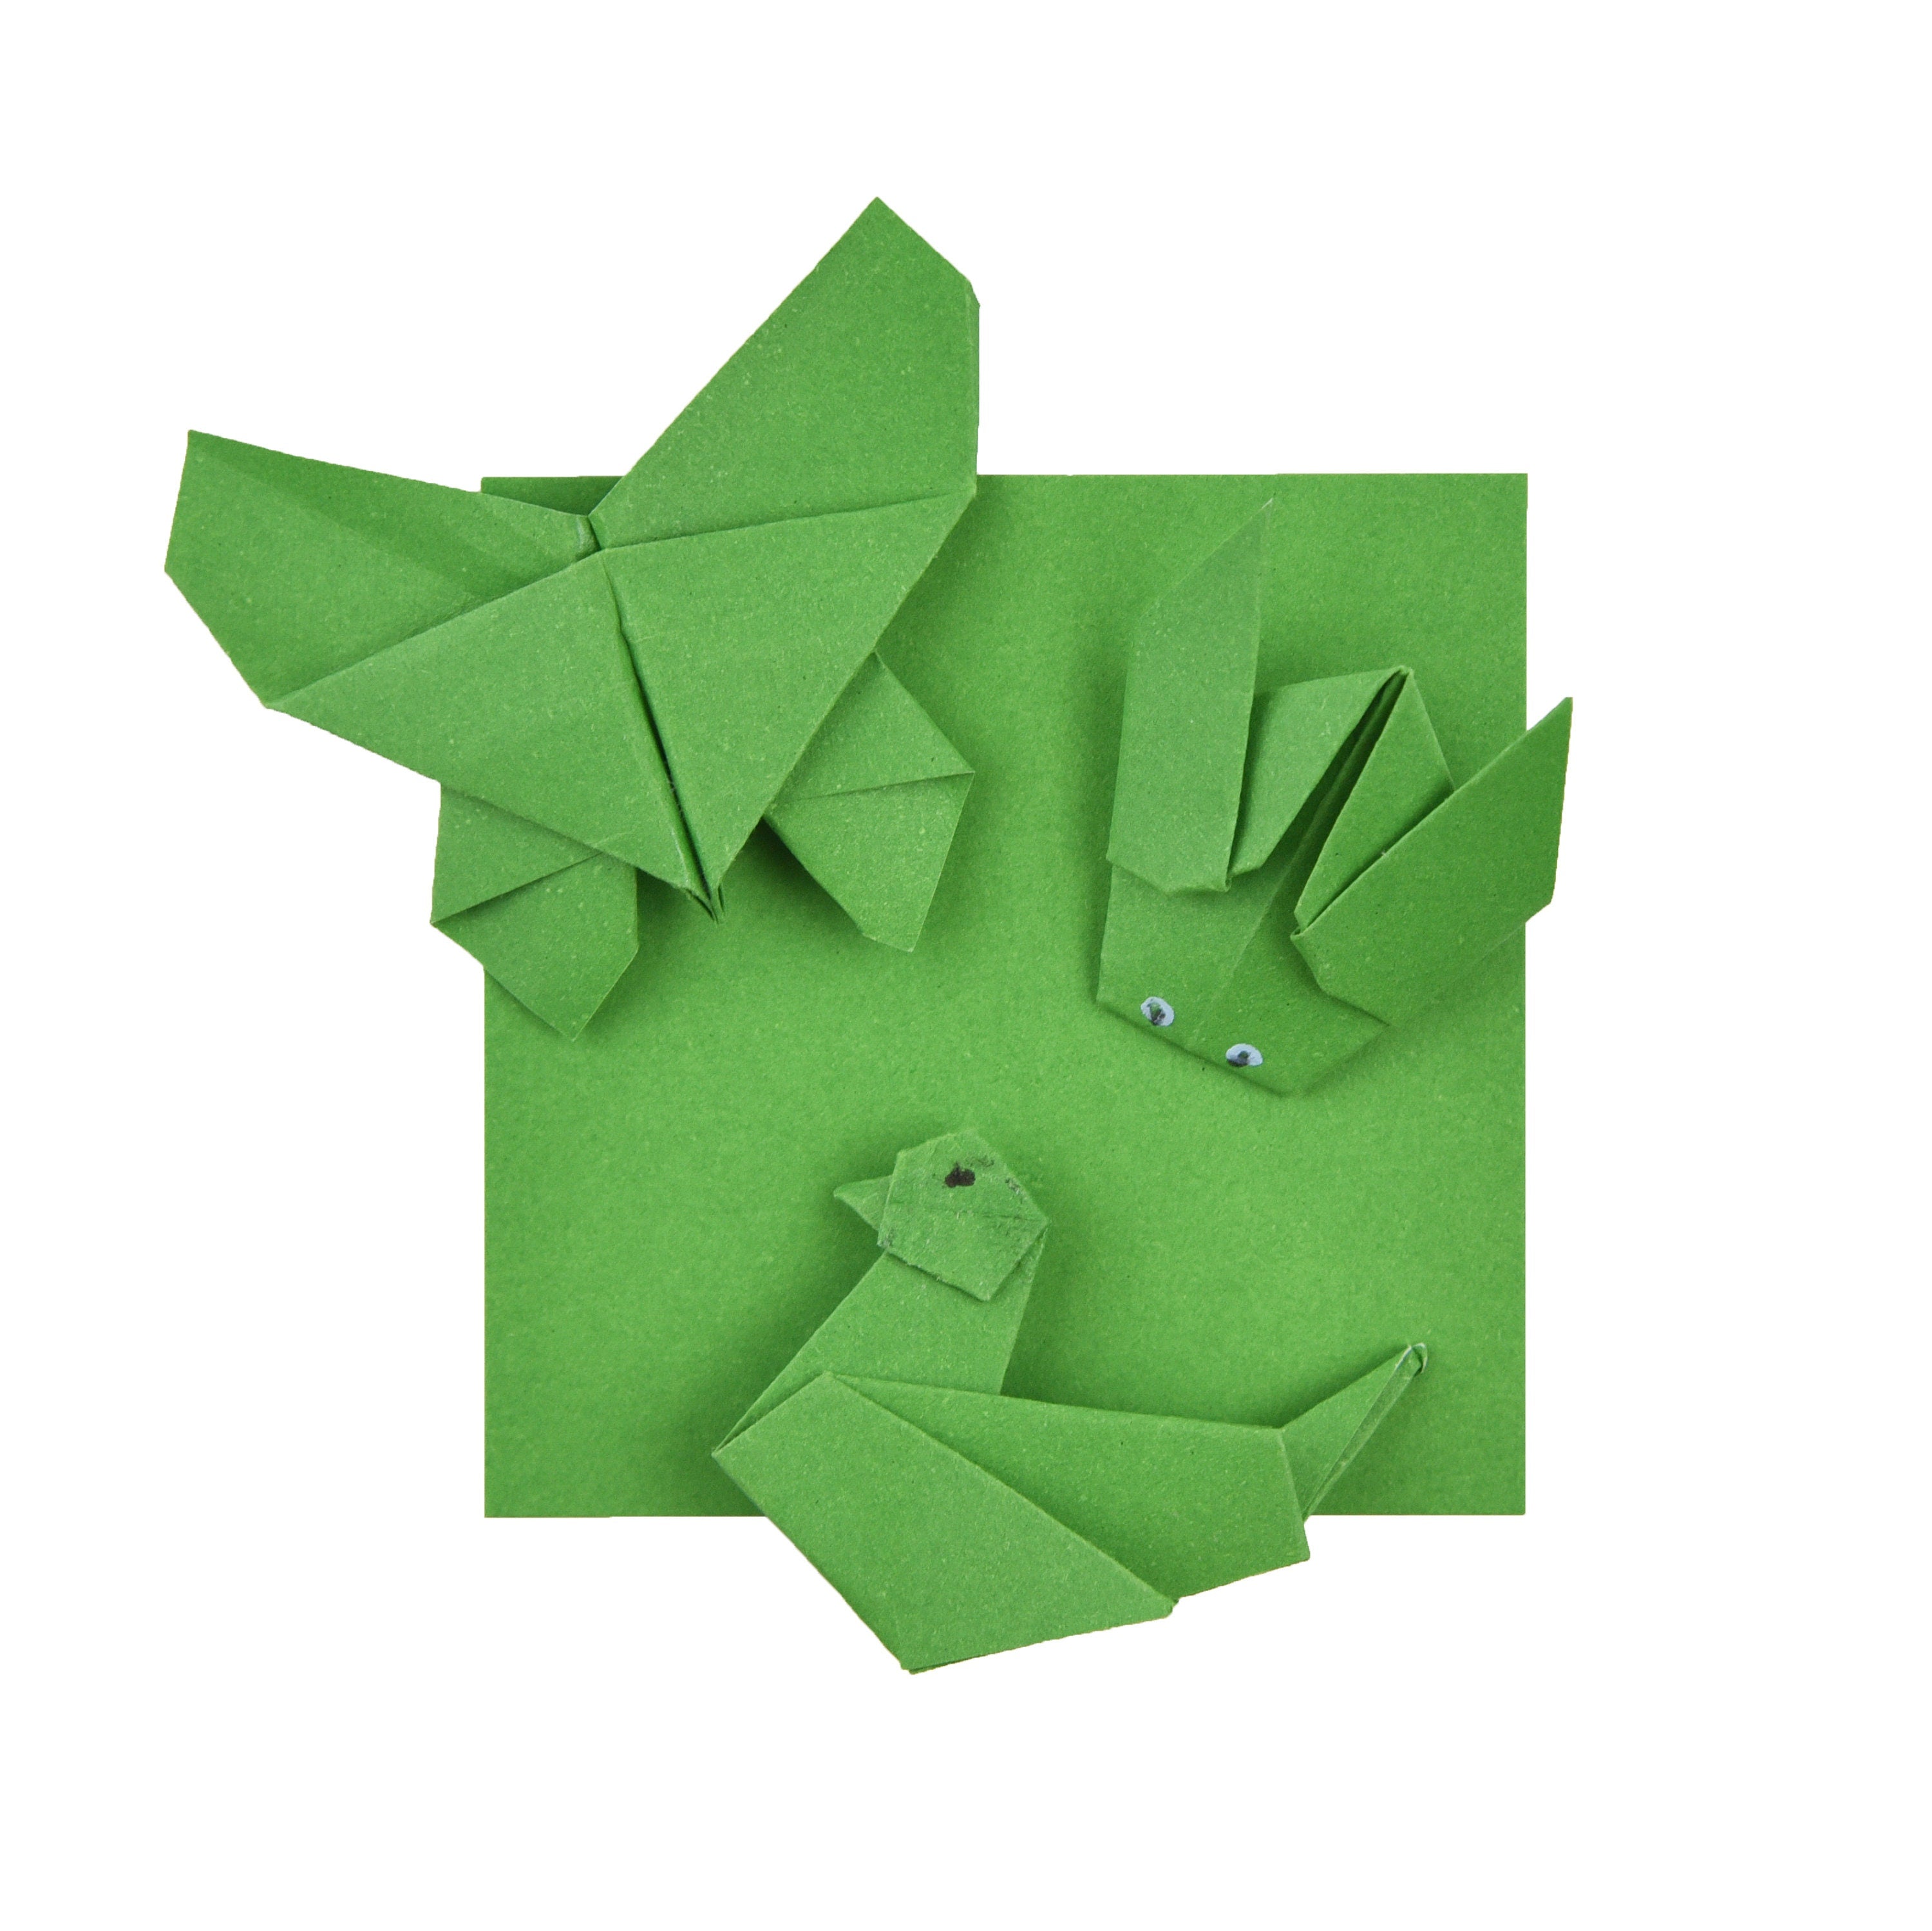 100 Hojas de Papel Origami - 3x3 pulgadas - Paquete de Papel Cuadrado para Plegar, Grullas de Origami y Decoración - S22